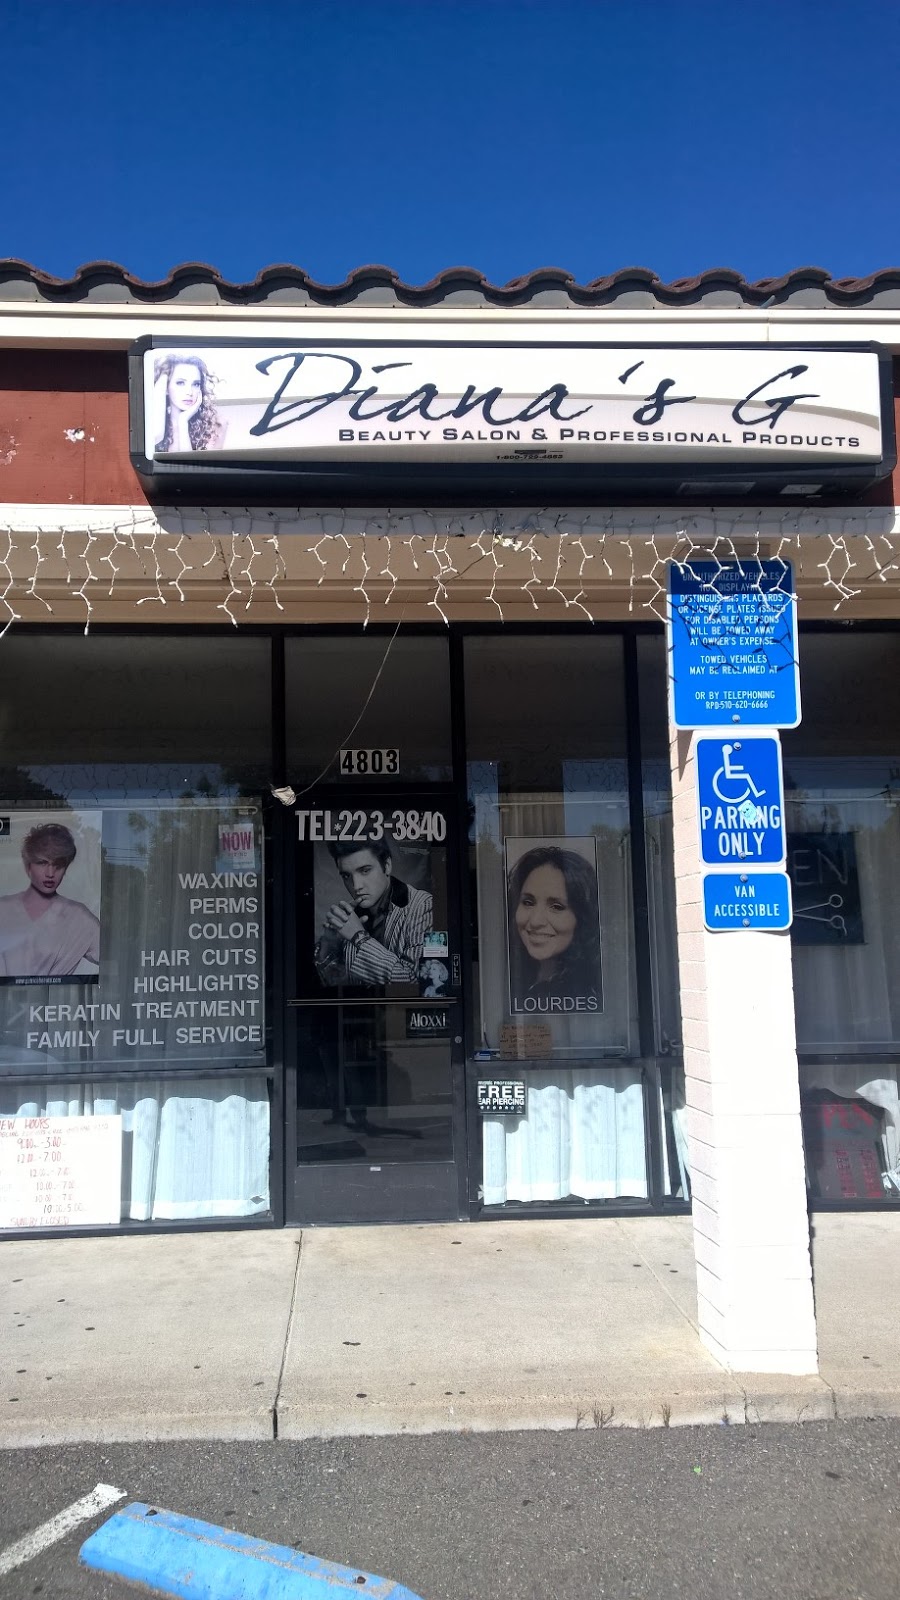 Dianas G Beauty Salon | 4803 Valley View Rd, El Sobrante, CA 94803 | Phone: (510) 846-9202